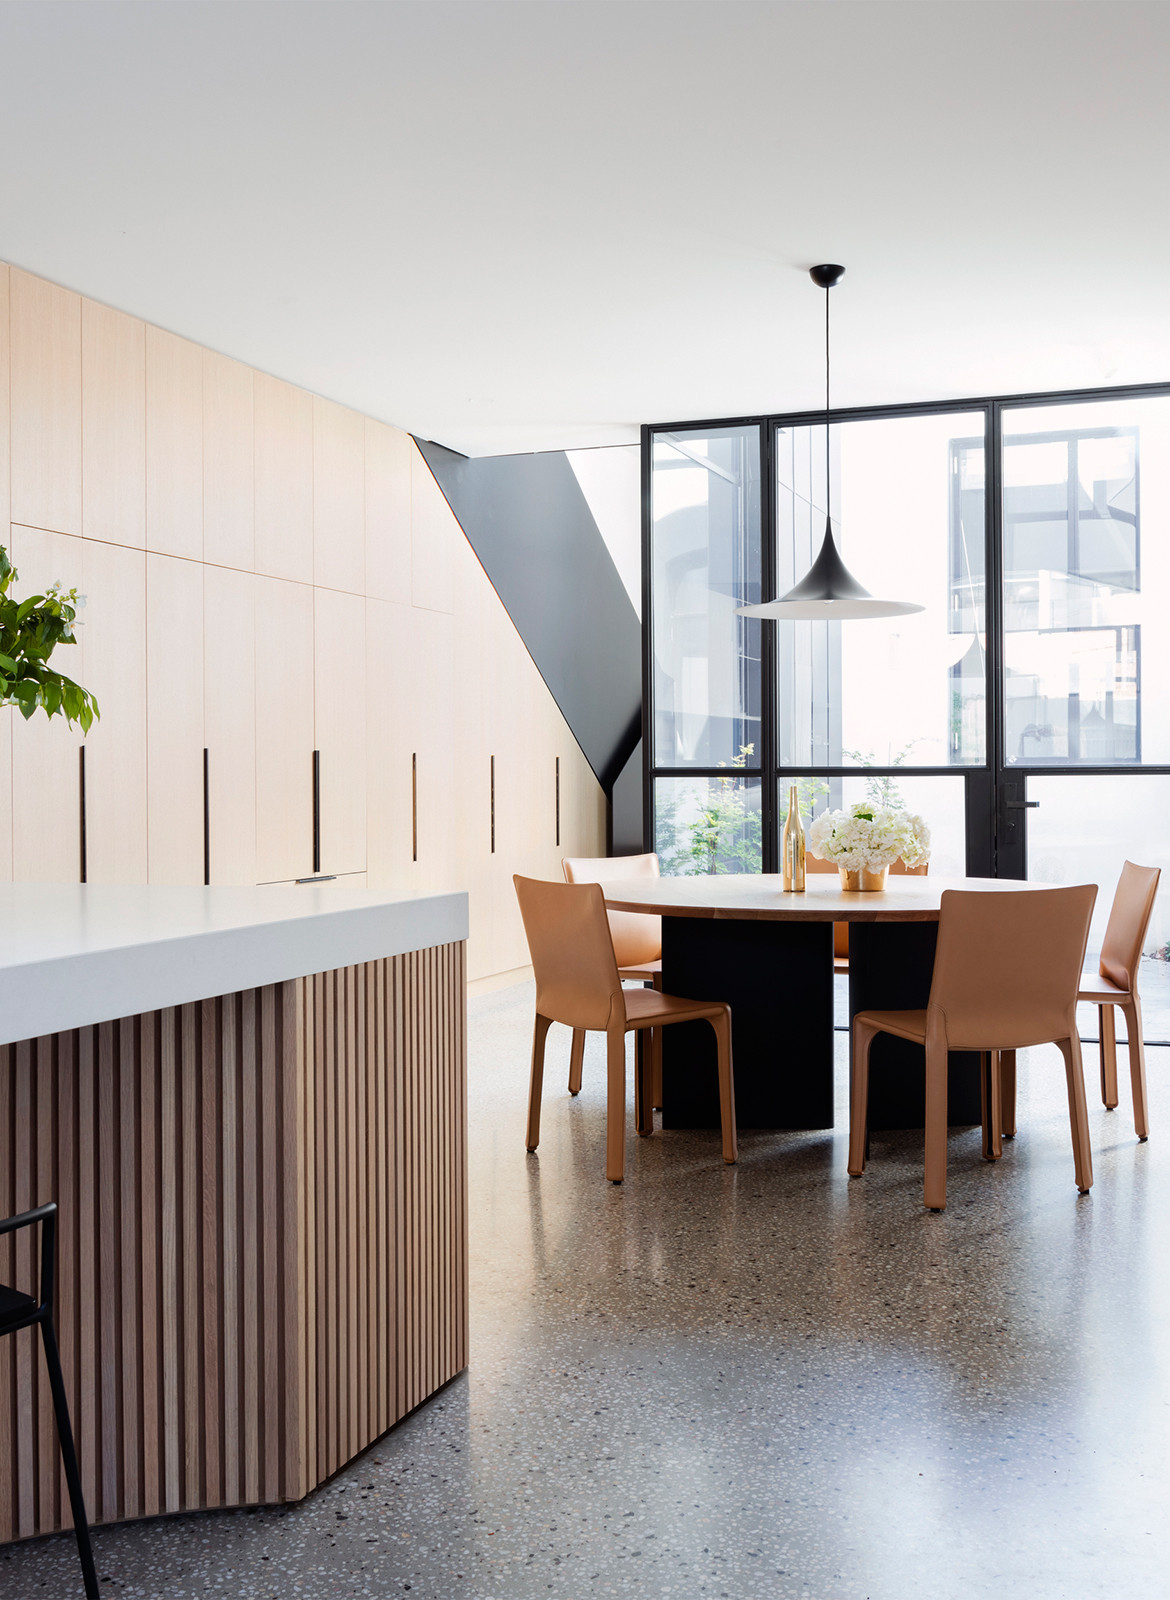 Port Melbourne House Pandolfini Architects CC Rory Gardiner kitchen island dining